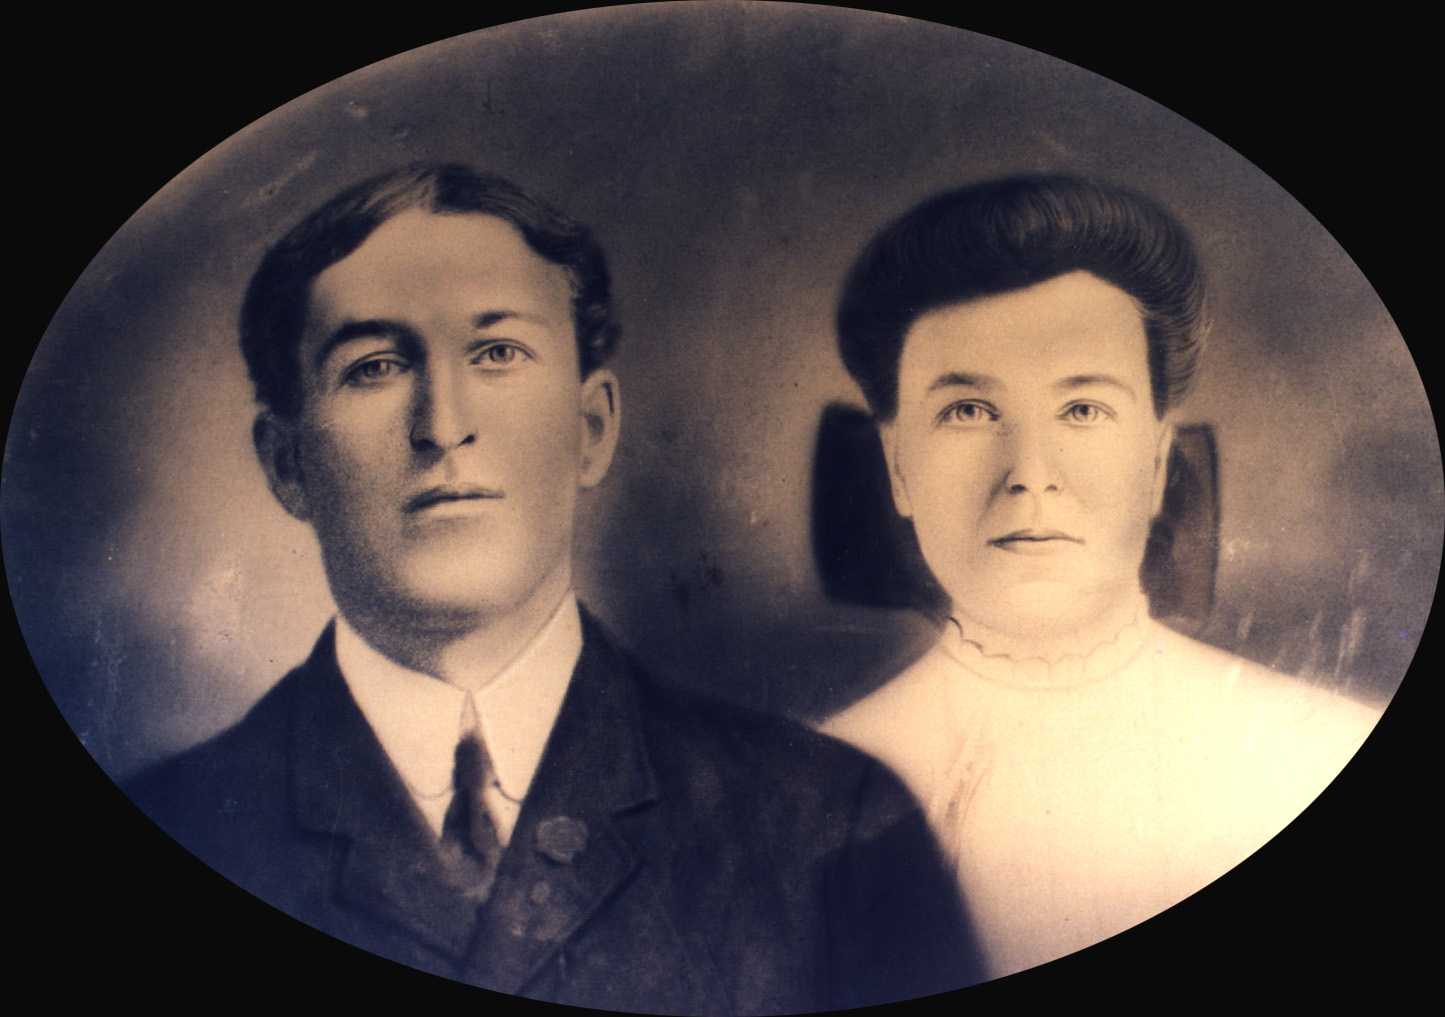 Fred and Ellen Jane - wedding photo, 1908